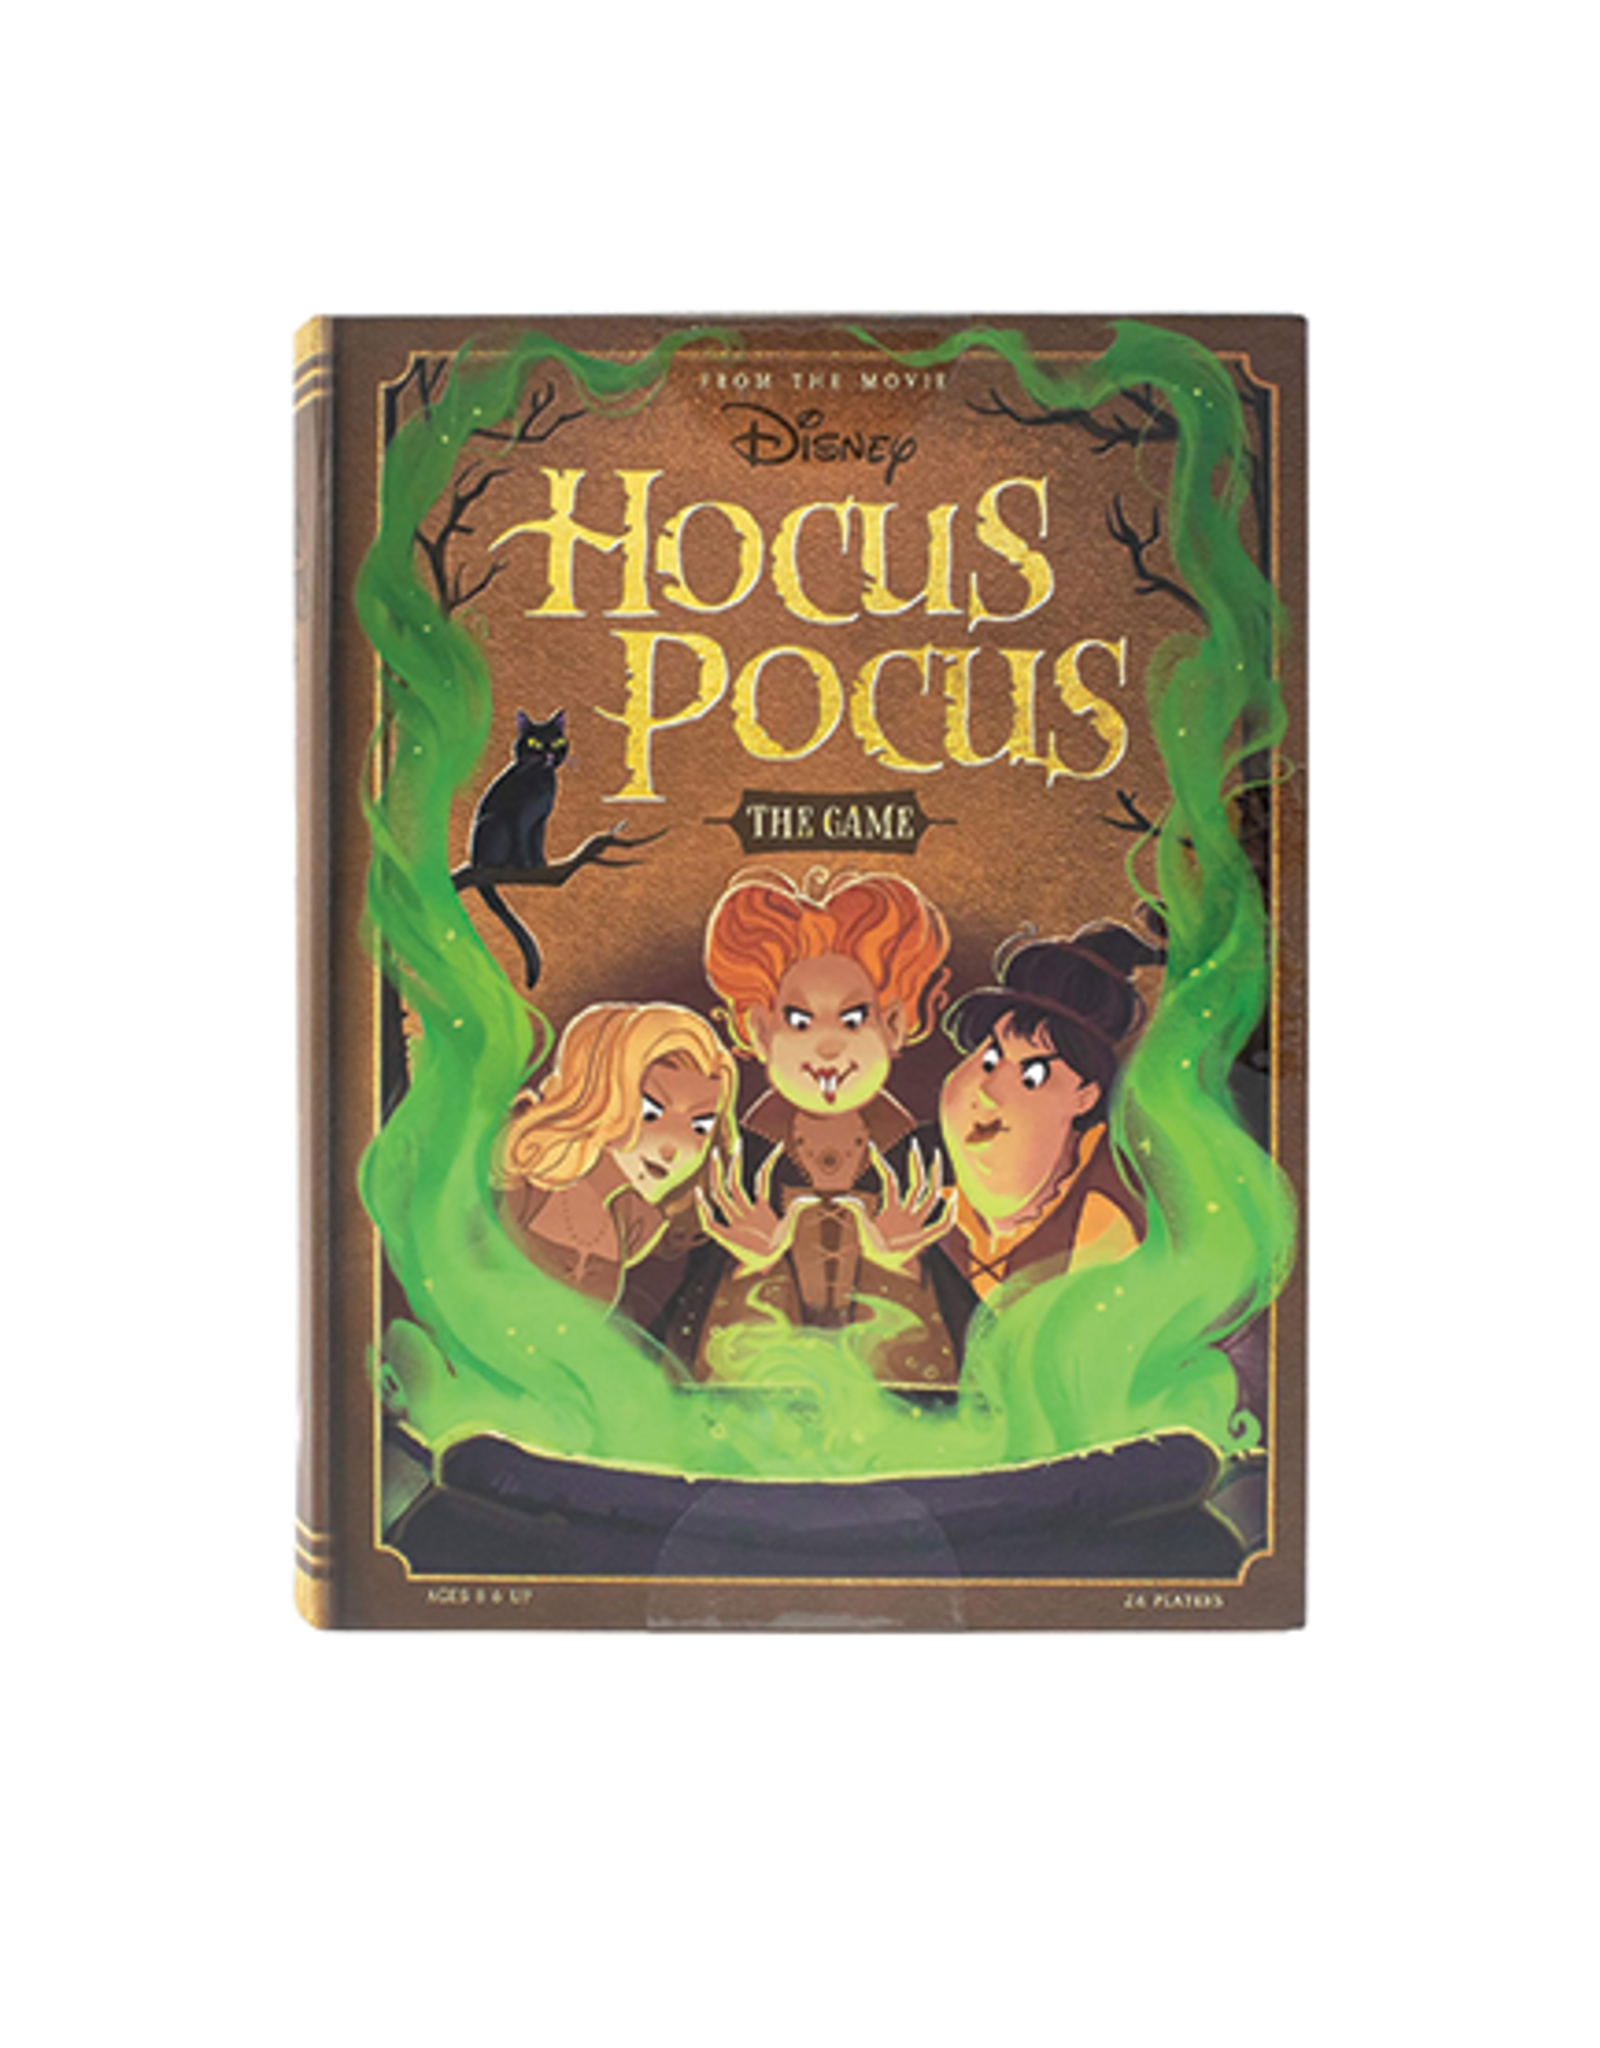 Hocus Pocus Board Game